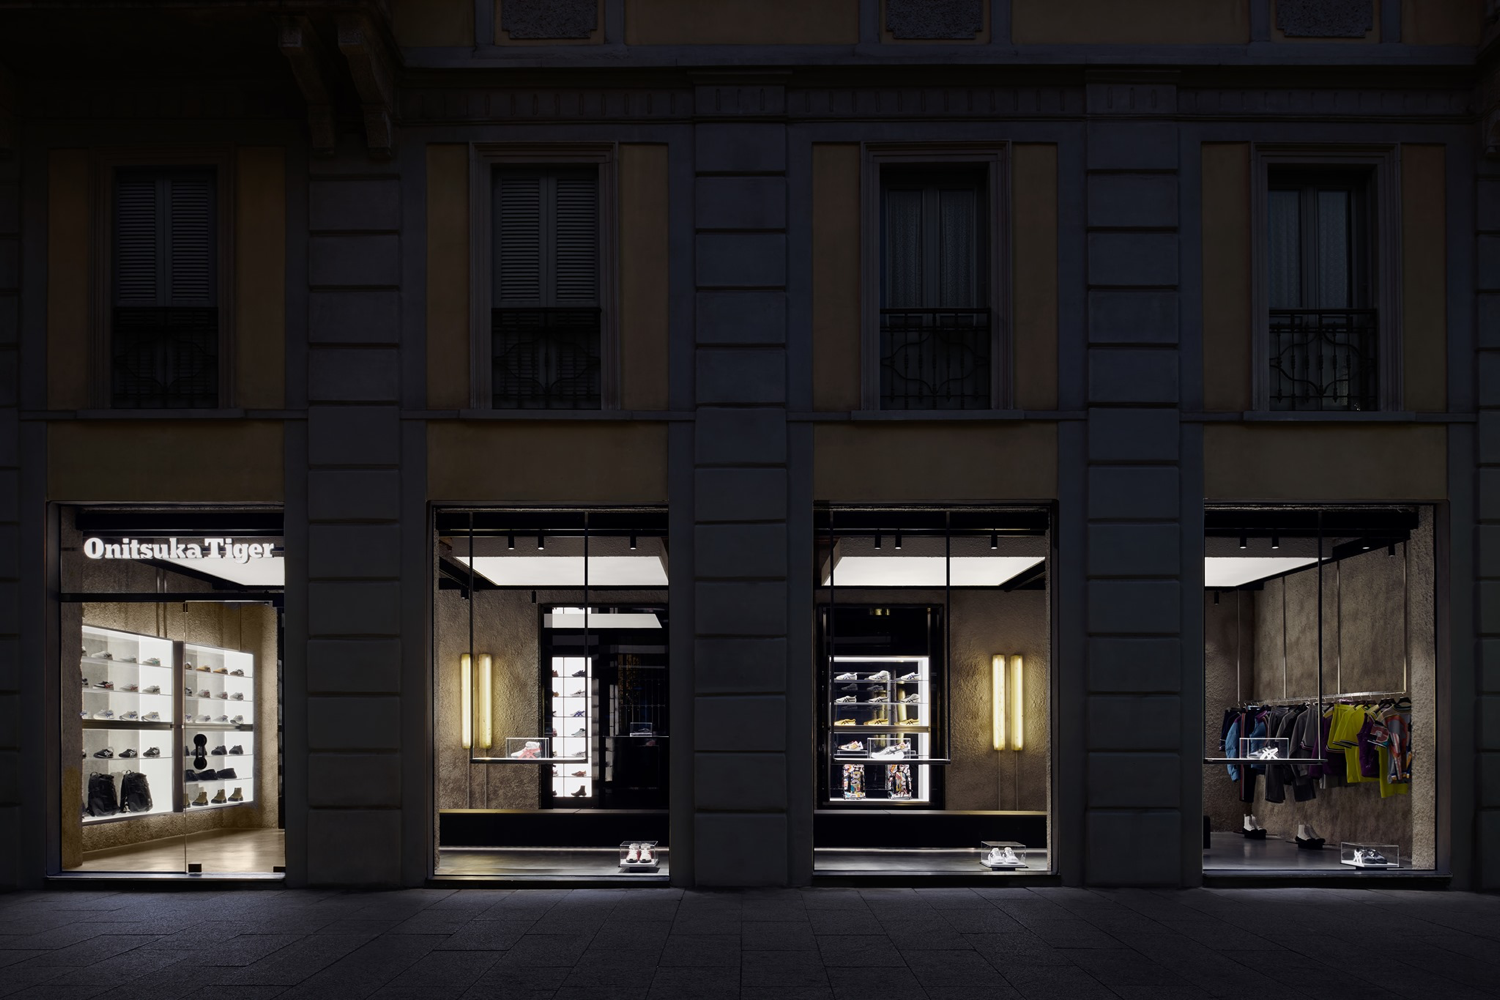 Milan: Onitsuka Tiger flagship store opening